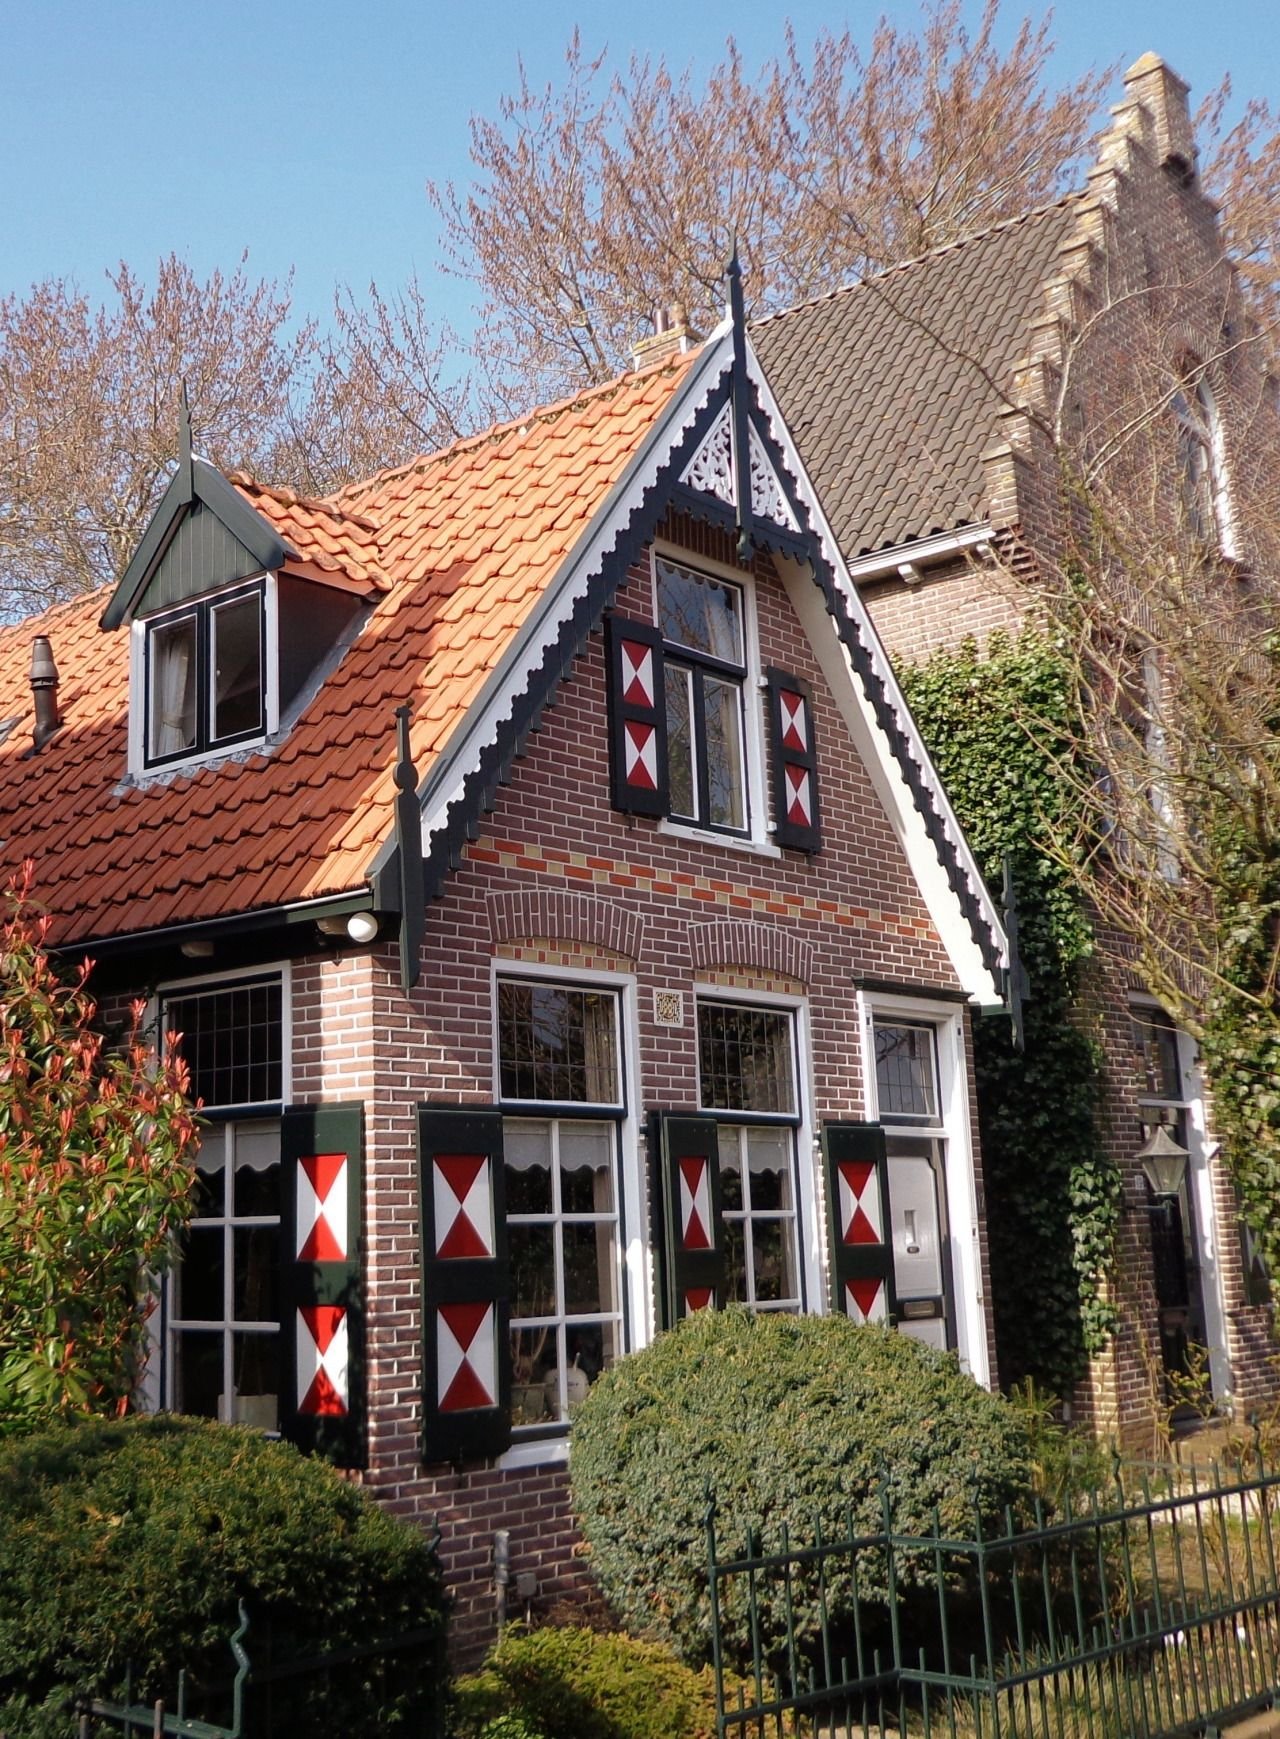 Голландский дом отзывы. Голландия Холланд. Олд Хаус голландский домик. Архитектура Амстердама. Фасад в голландском стиле.